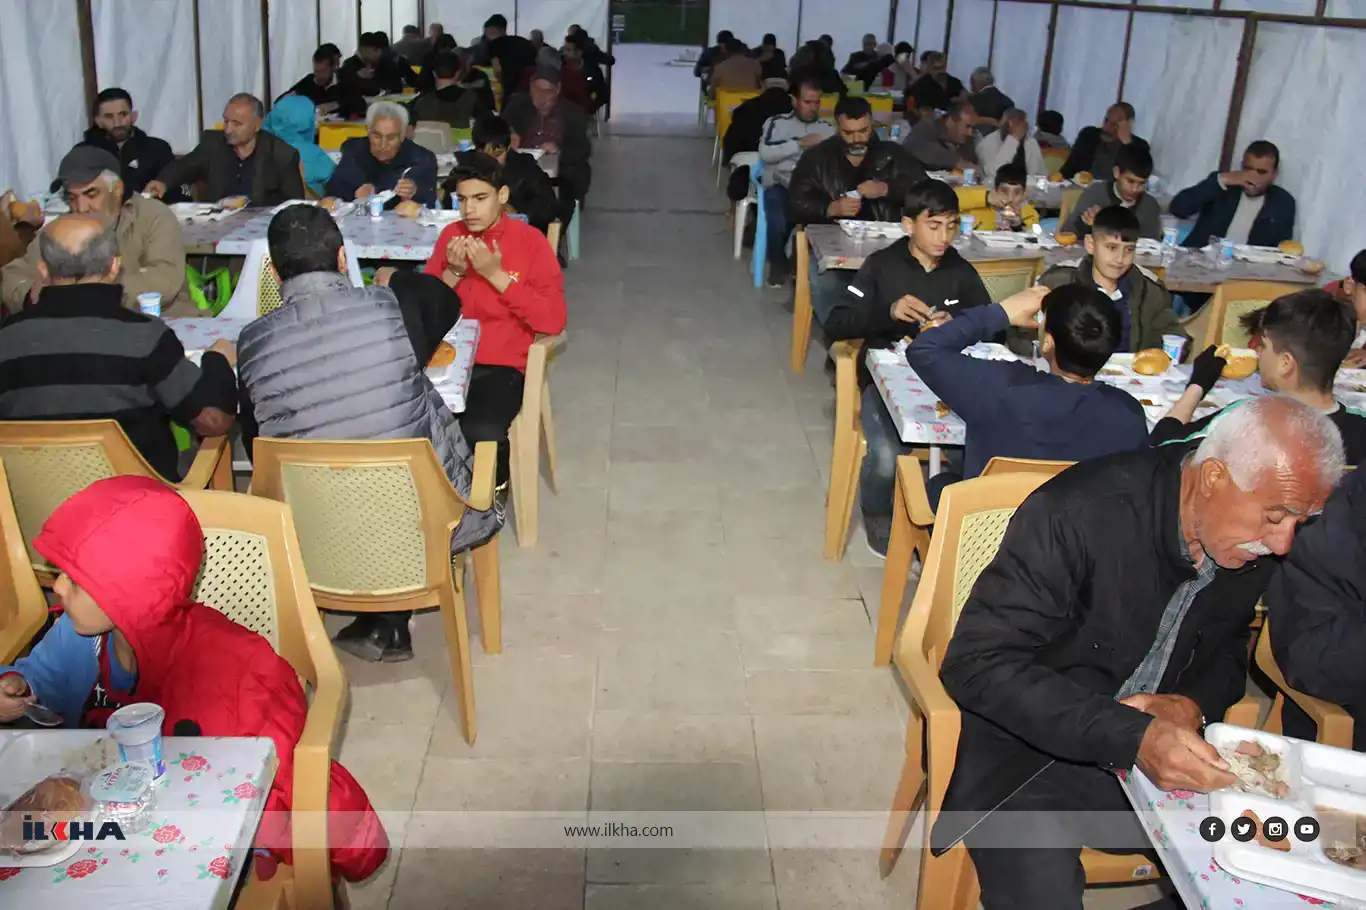 خیمه افطاری توسط انجمن وقف کاروان امید در دیاربکر آماده شد